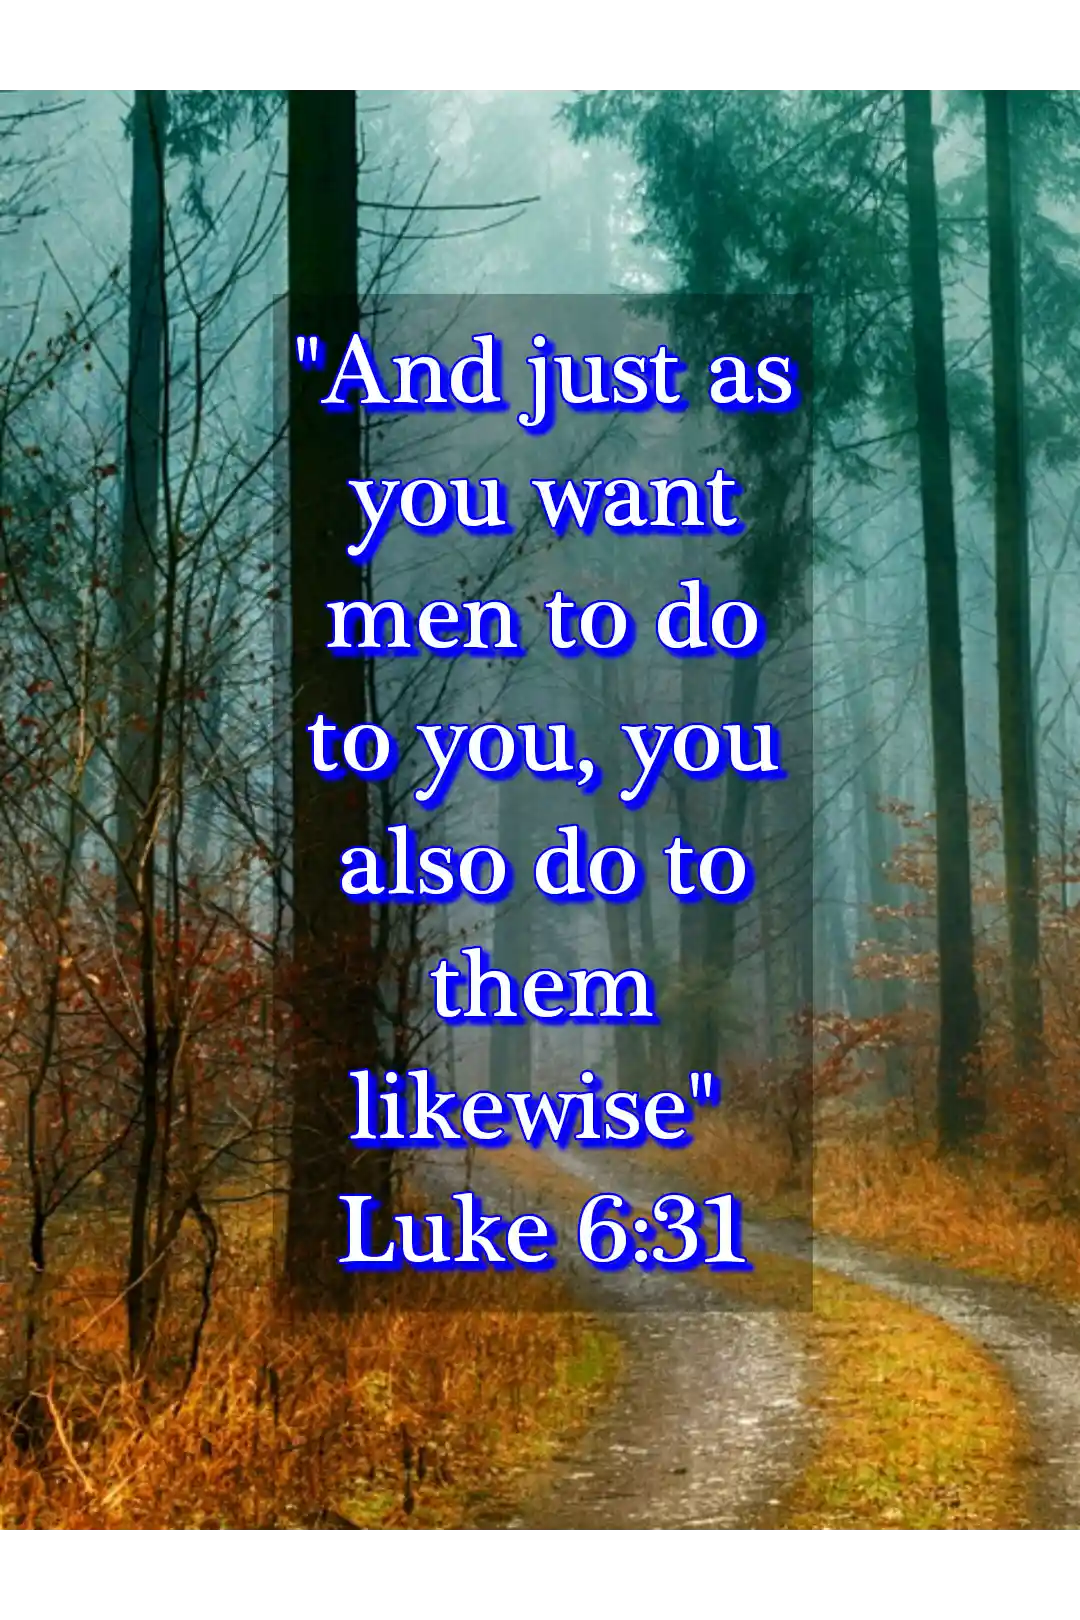 bible verses about humble (Luke 6:31)